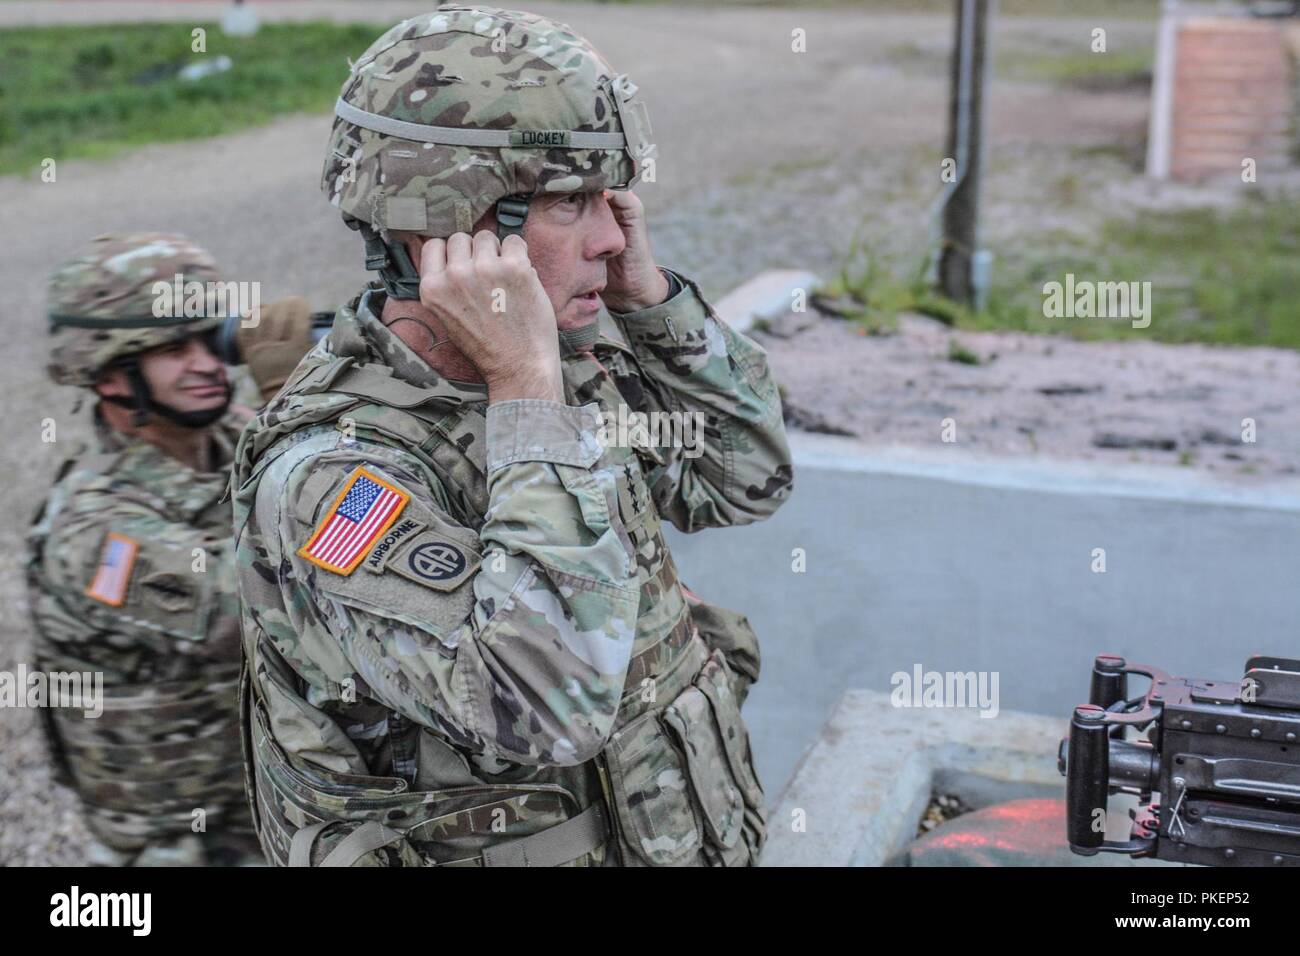 LTG Charles D. Luckey, Jefe de la Reserva del Ejército y el Comandante General del Ejército de los Estados Unidos, comando de la reserva, se prepara para disparar una ametralladora M2 durante la operación Task Force Ultimate, Cold Steel II, auspiciada por Estados Unidos de asuntos civiles del ejército y el Comando de Operaciones Psicológicas (Airborne), 25 de julio de 2018, en base conjunta Mc-Guire-Dix Lakehurst, New Jersey. Funcionamiento Cold Steel es la Reserva del Ejército estadounidense de la tripulación sirve de armas de cualificación y validación para garantizar el ejercicio de América del Ejército las unidades de reserva y los soldados están entrenados y listos para su implementación en el corto plazo como parte de Ready Force X y llevar listas para combatir y mortífero poder de fuego en Foto de stock